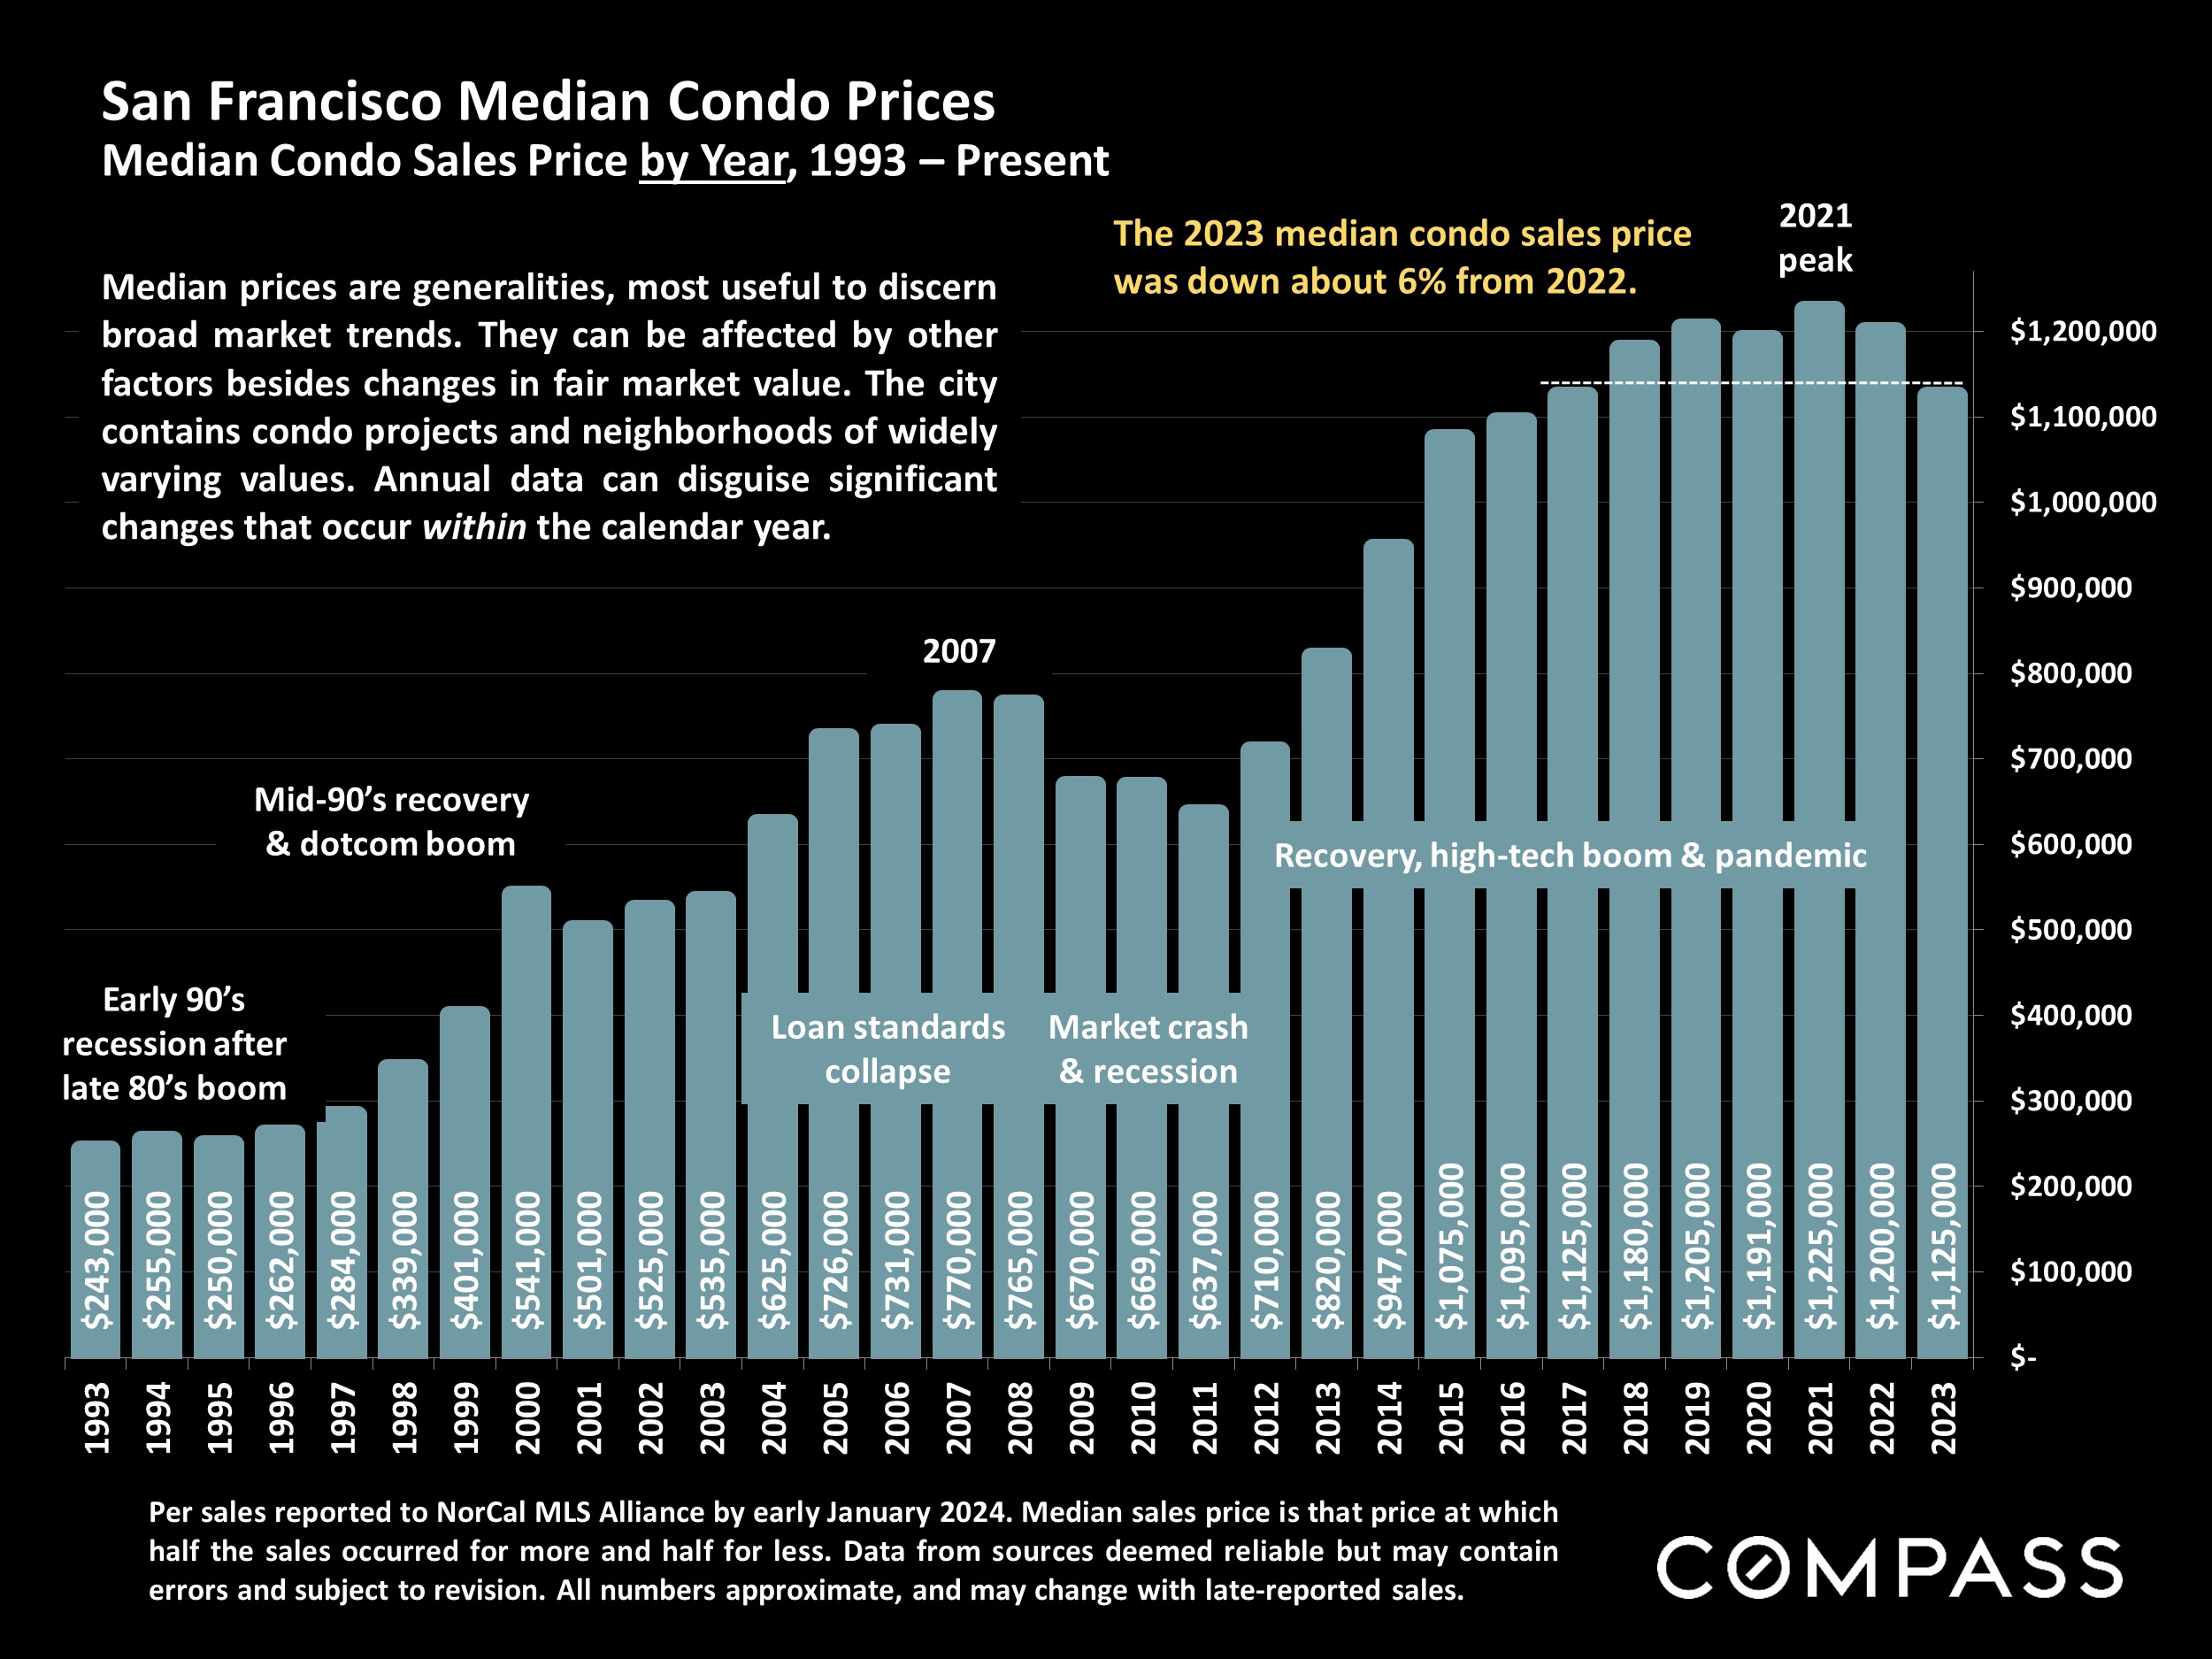 San Francisco Median Condo Prices.Median Condo Sales Price by Year, 1993 - Present